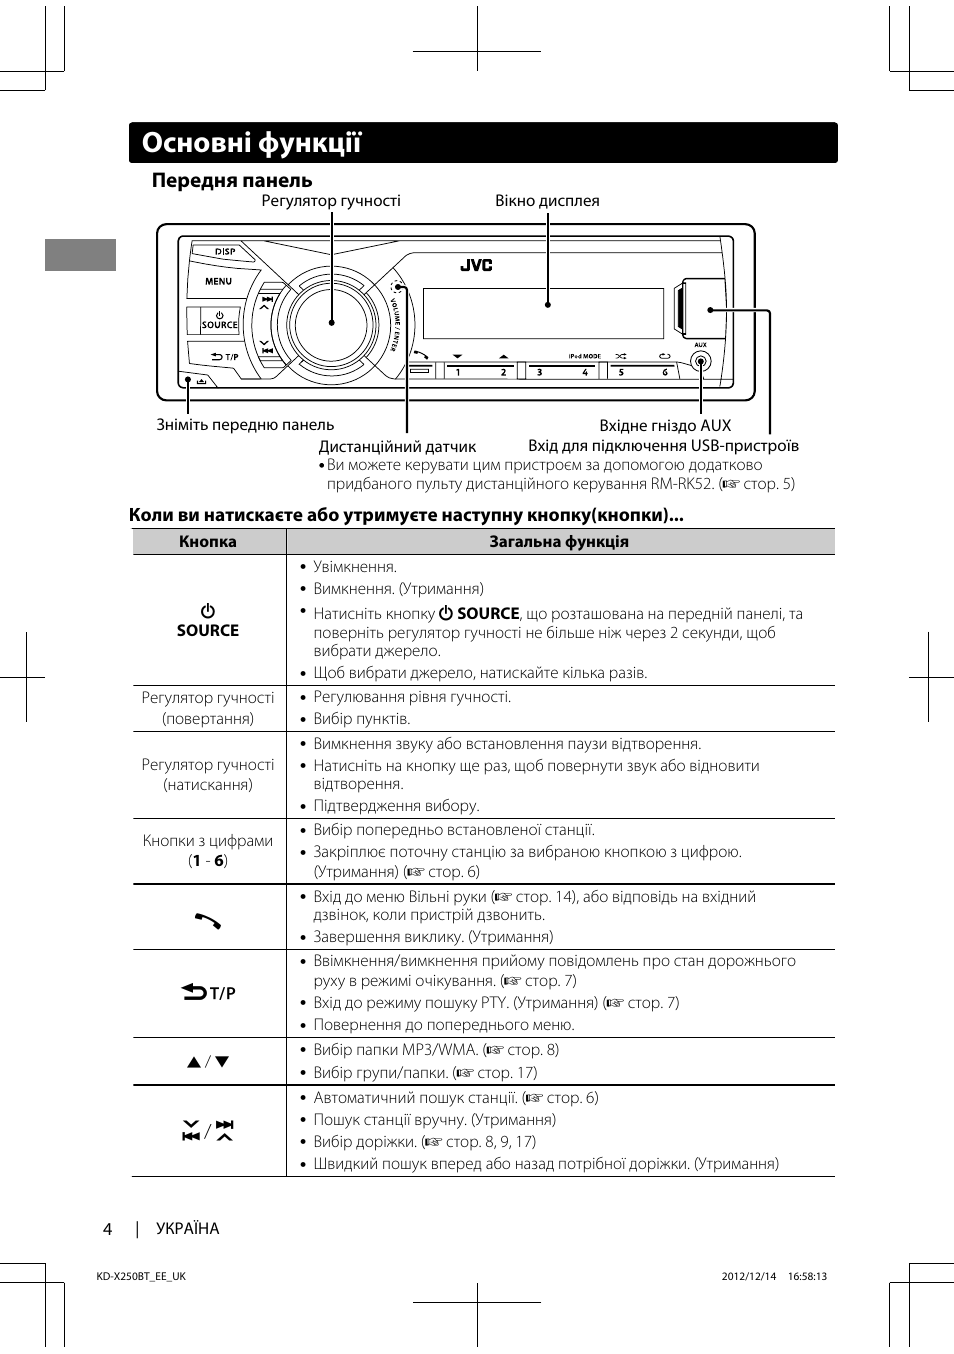 Инструкция по настройке бюджетной автомагнитолы jvc kd-x153 - журнал автомобилиста